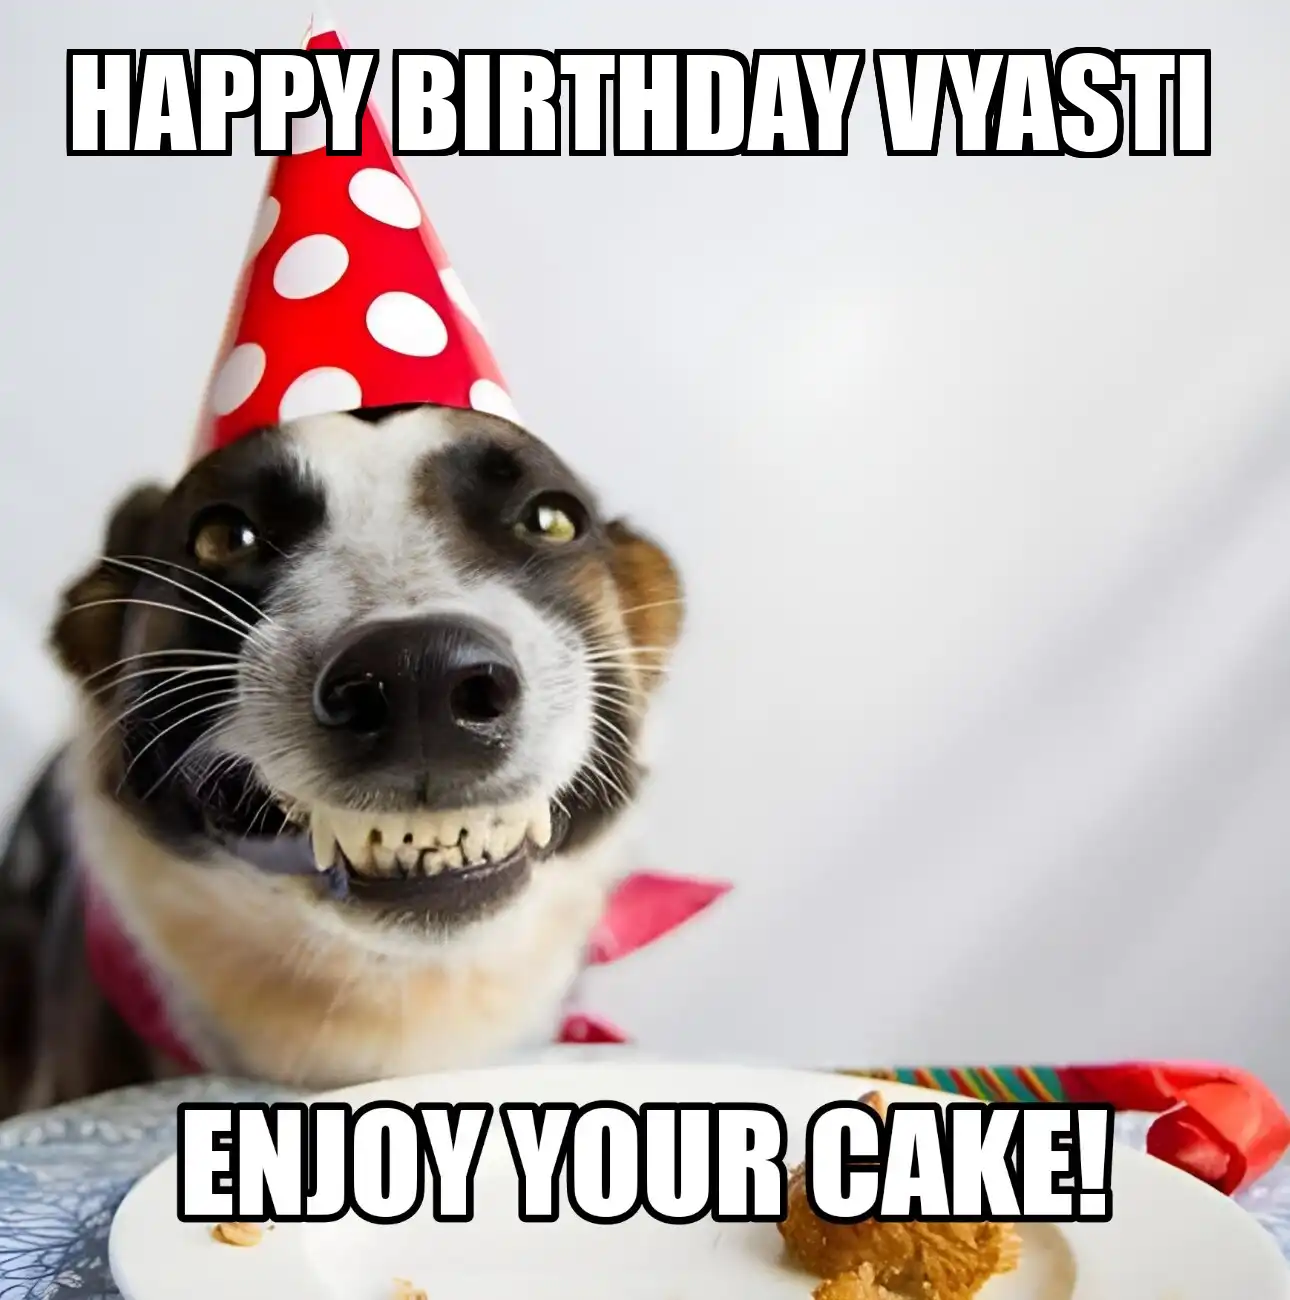 Happy Birthday Vyasti Enjoy Your Cake Dog Meme